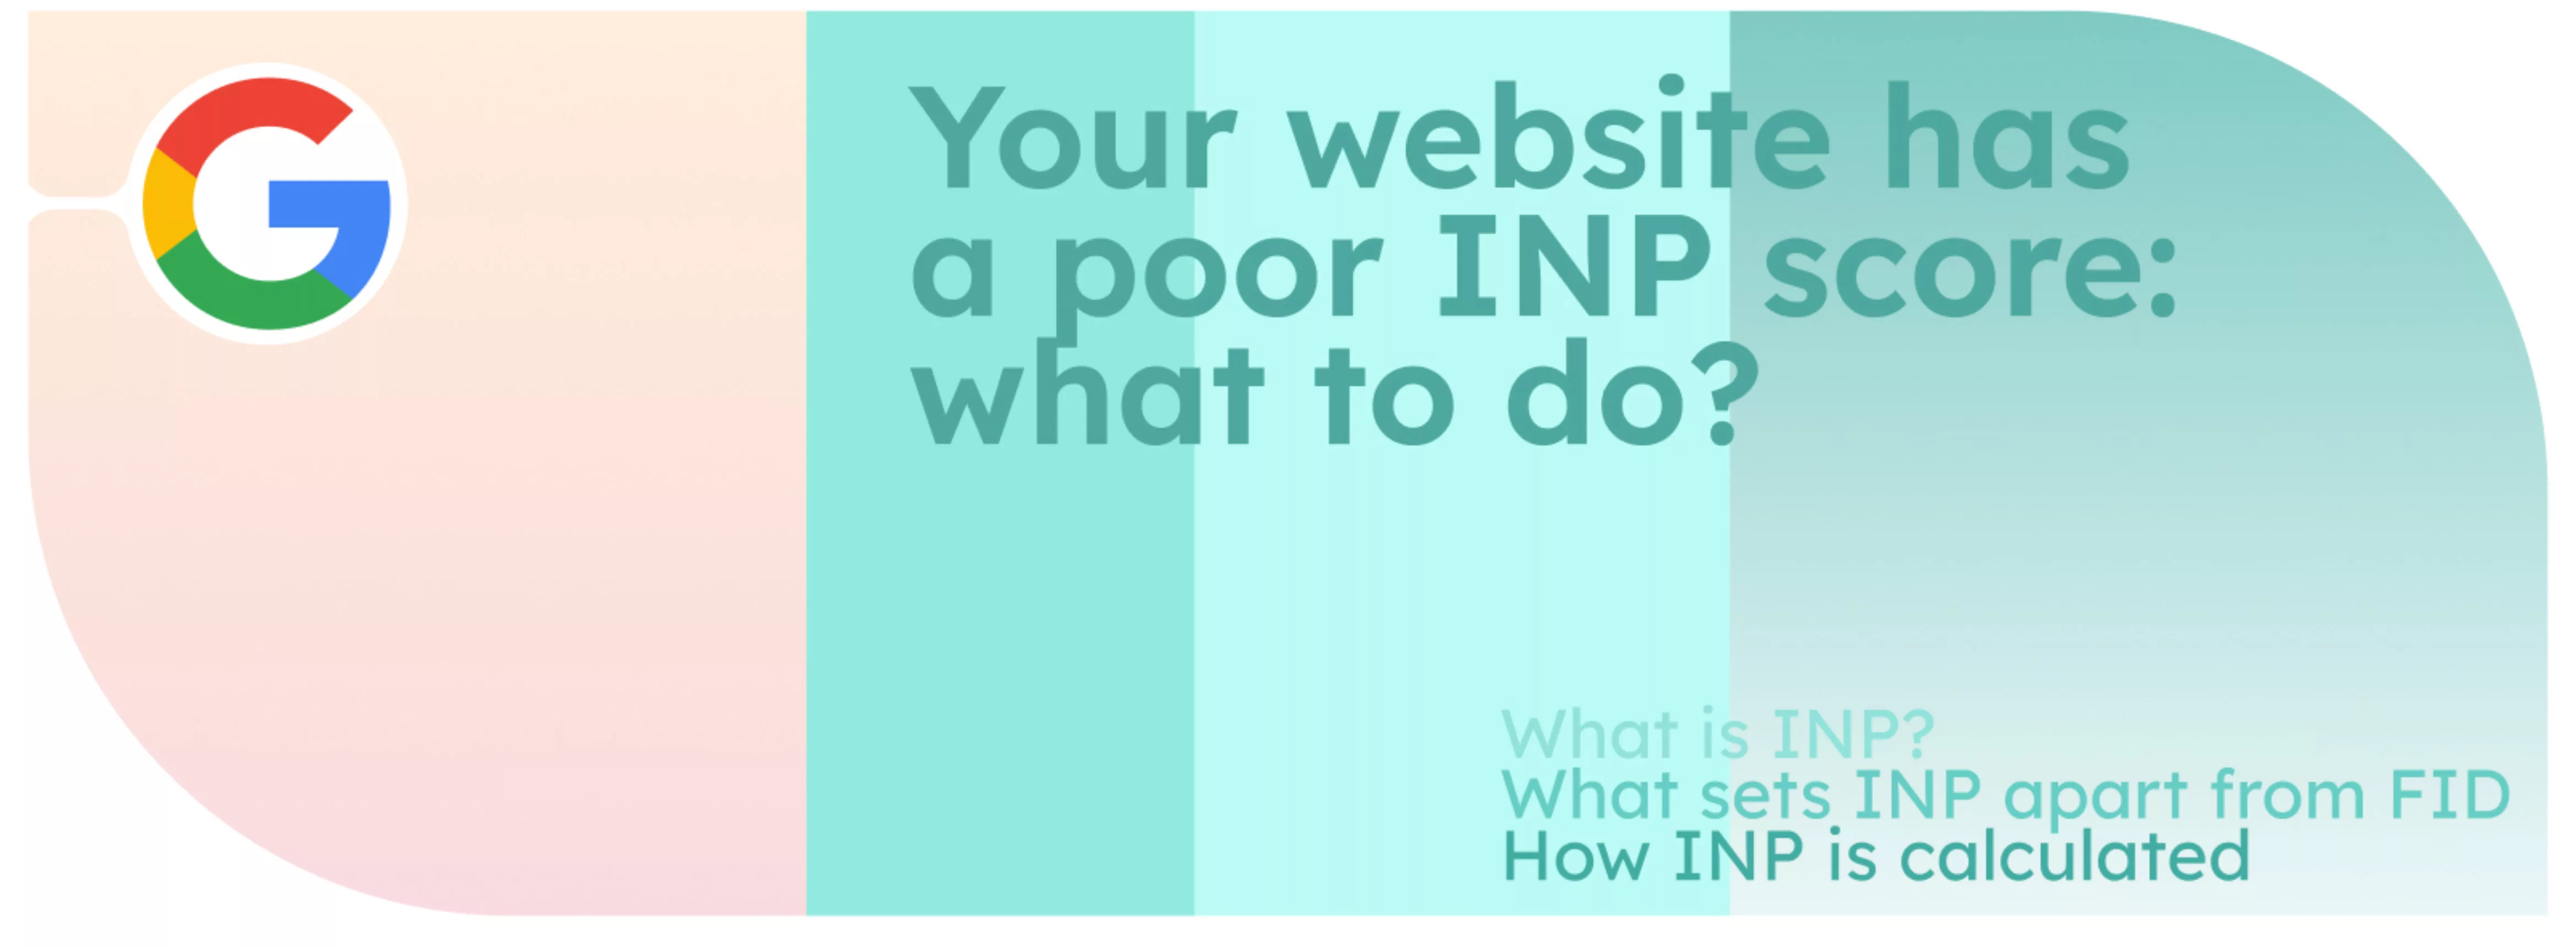 Su sitio web tiene una mala puntuación INP: ¿qué hacer?